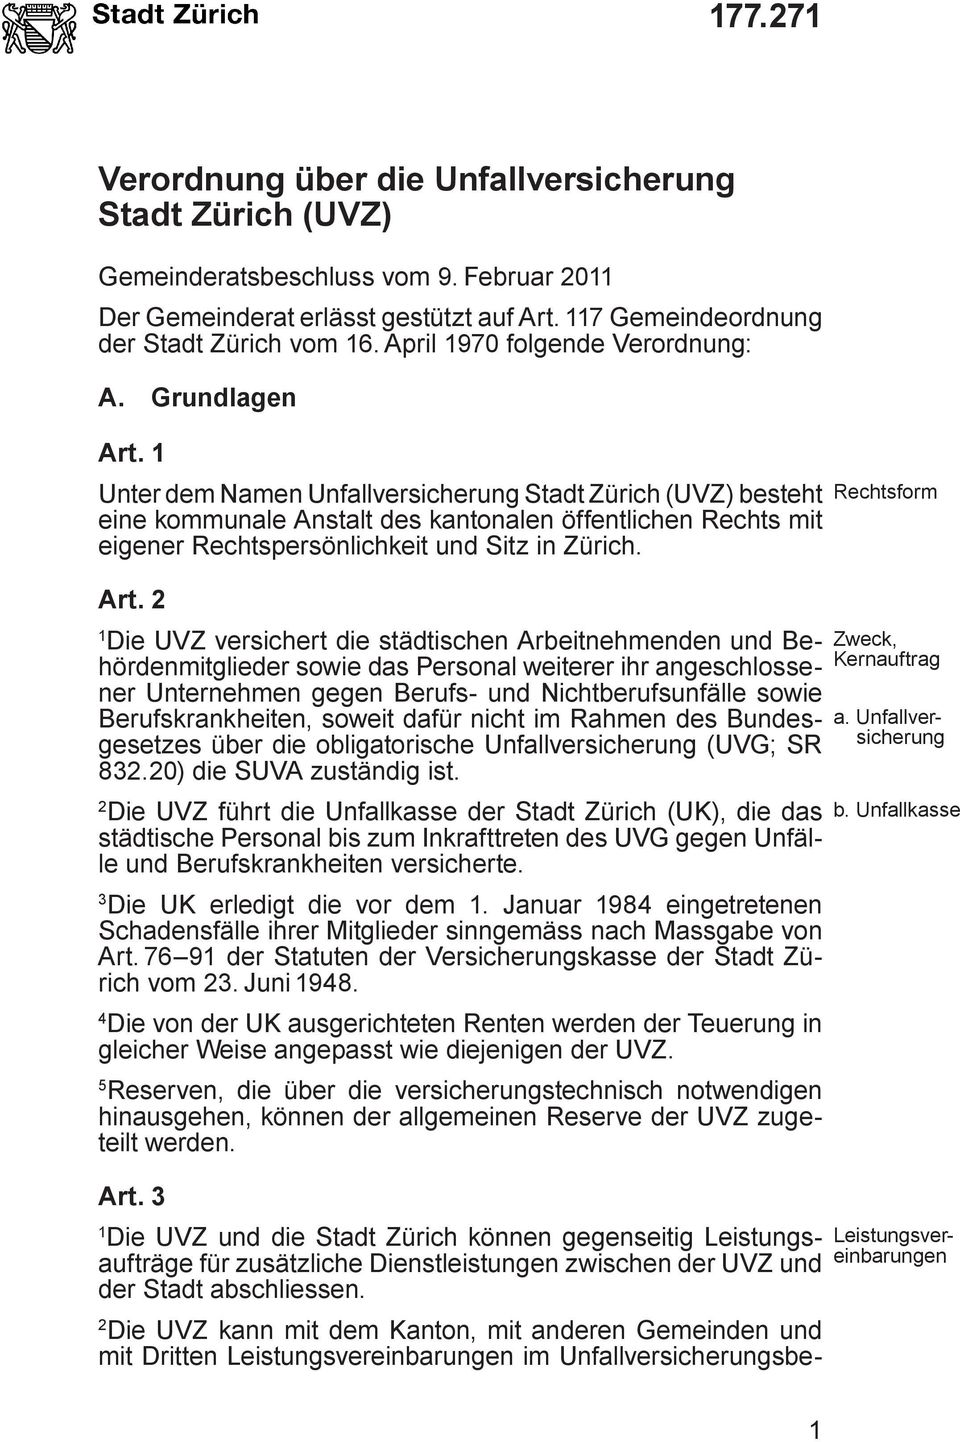 Unter dem Namen Unfallversicherung Stadt Zürich (UVZ) besteht eine kommunale Anstalt des kantonalen öffentlichen Rechts mit eigener Rechtspersönlichkeit und Sitz in Zürich. Art.